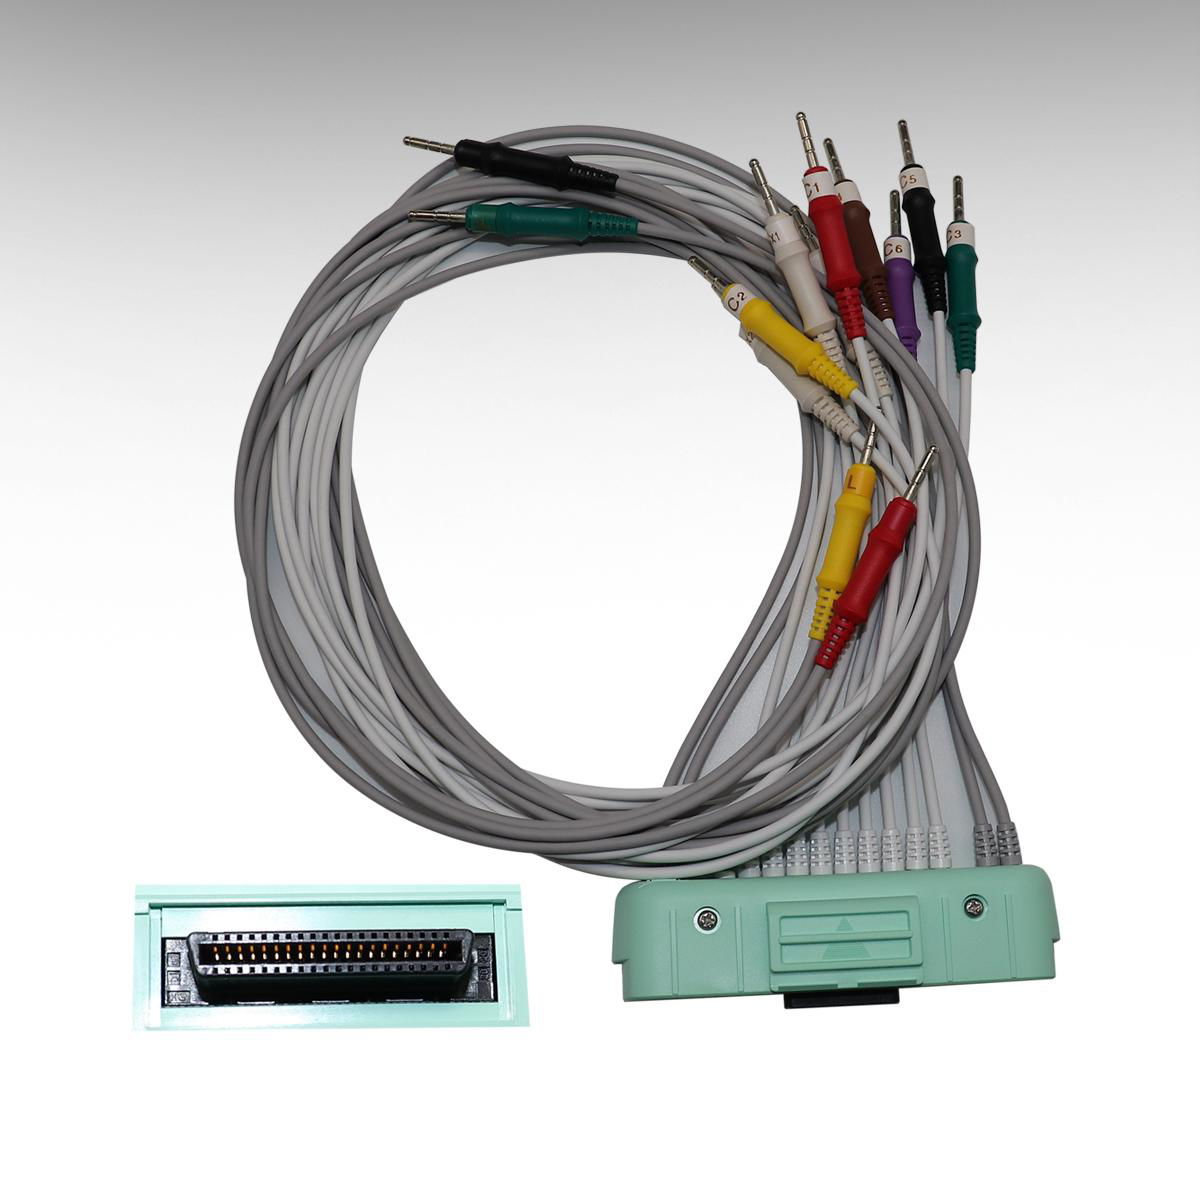 NIHOH KOHDEN ECG-1550P BR-921D K093L 10 leads ecg cable ecg cable 7 bin 2